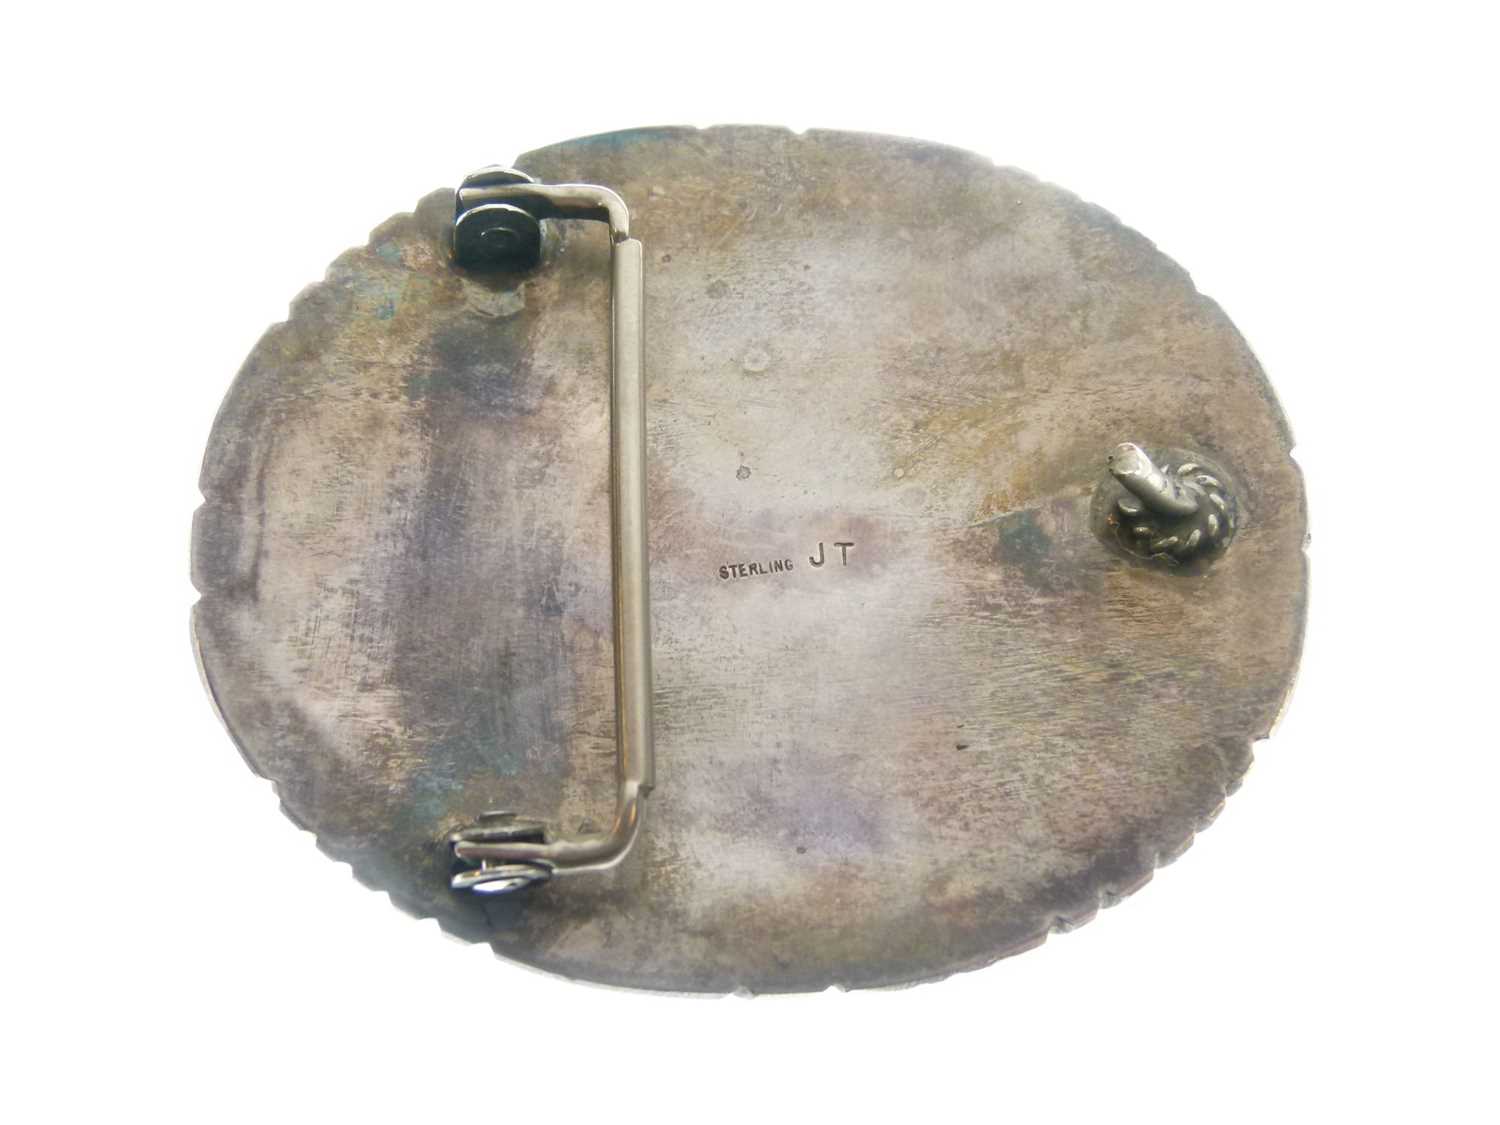 Heavy white metal bangle set irregular turquoise cabochons - Image 3 of 8